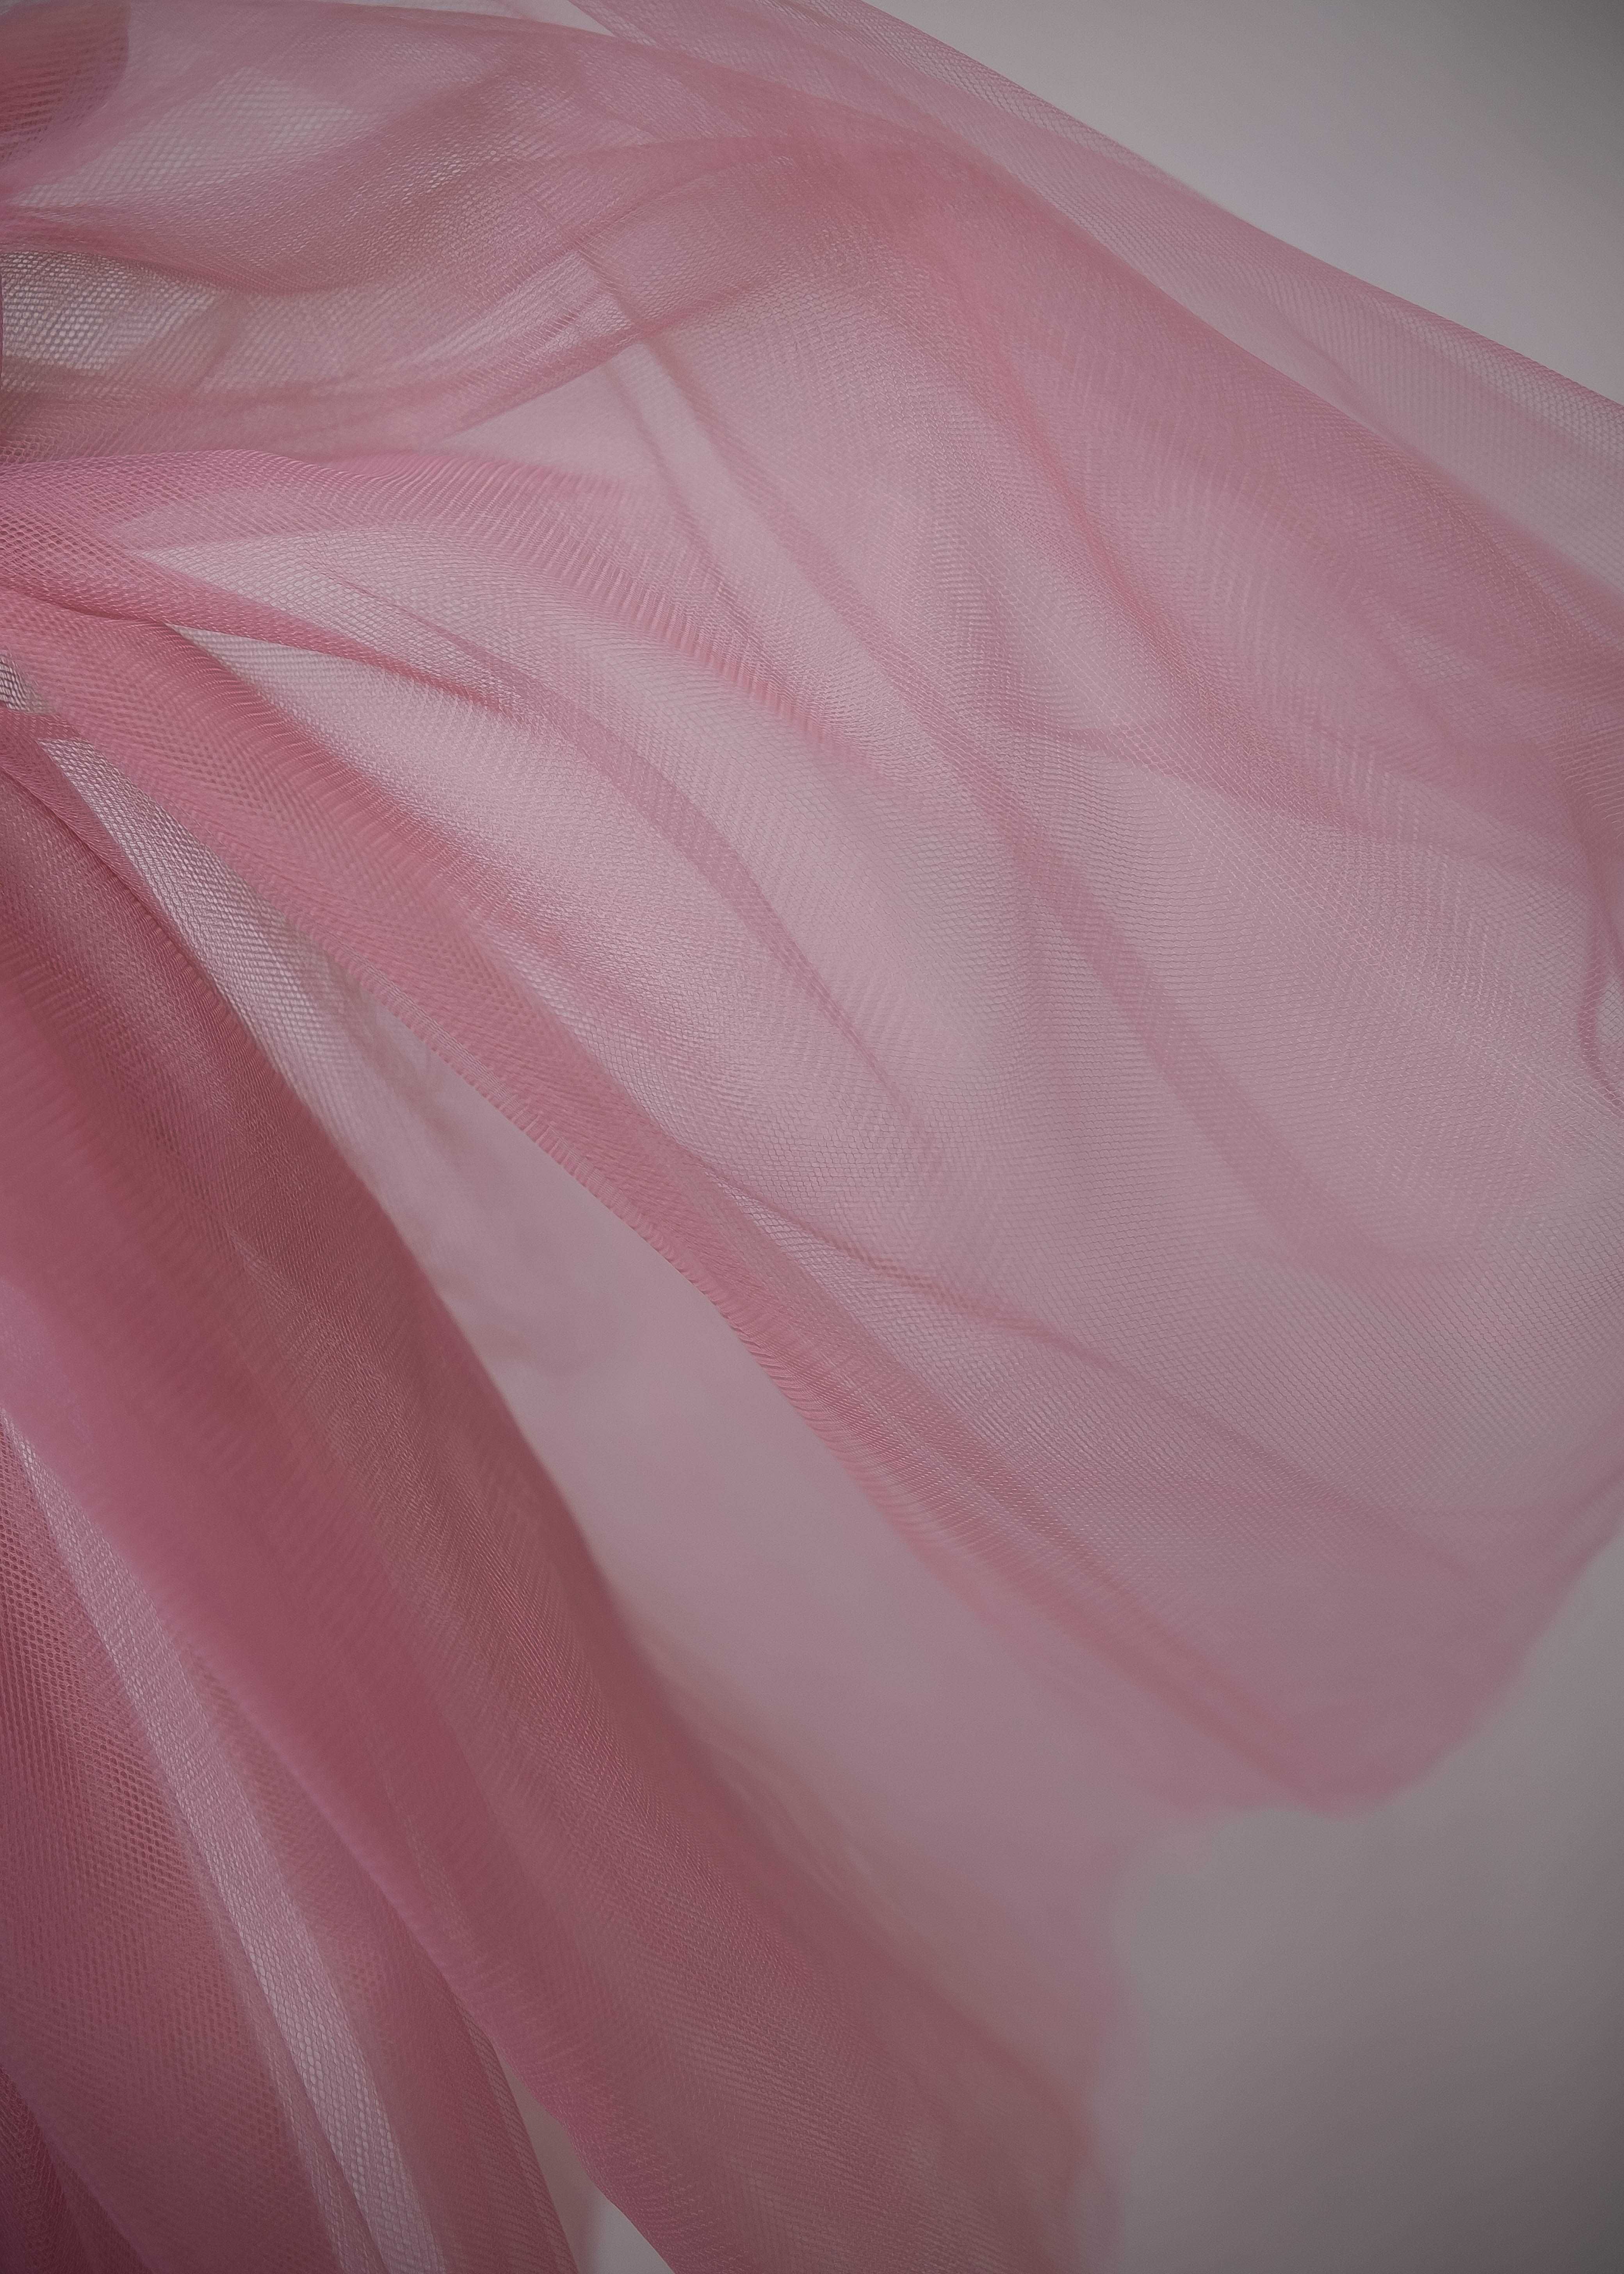 Świetna jakość miękki tiul sukienkowy welonowy różowy różne kolory